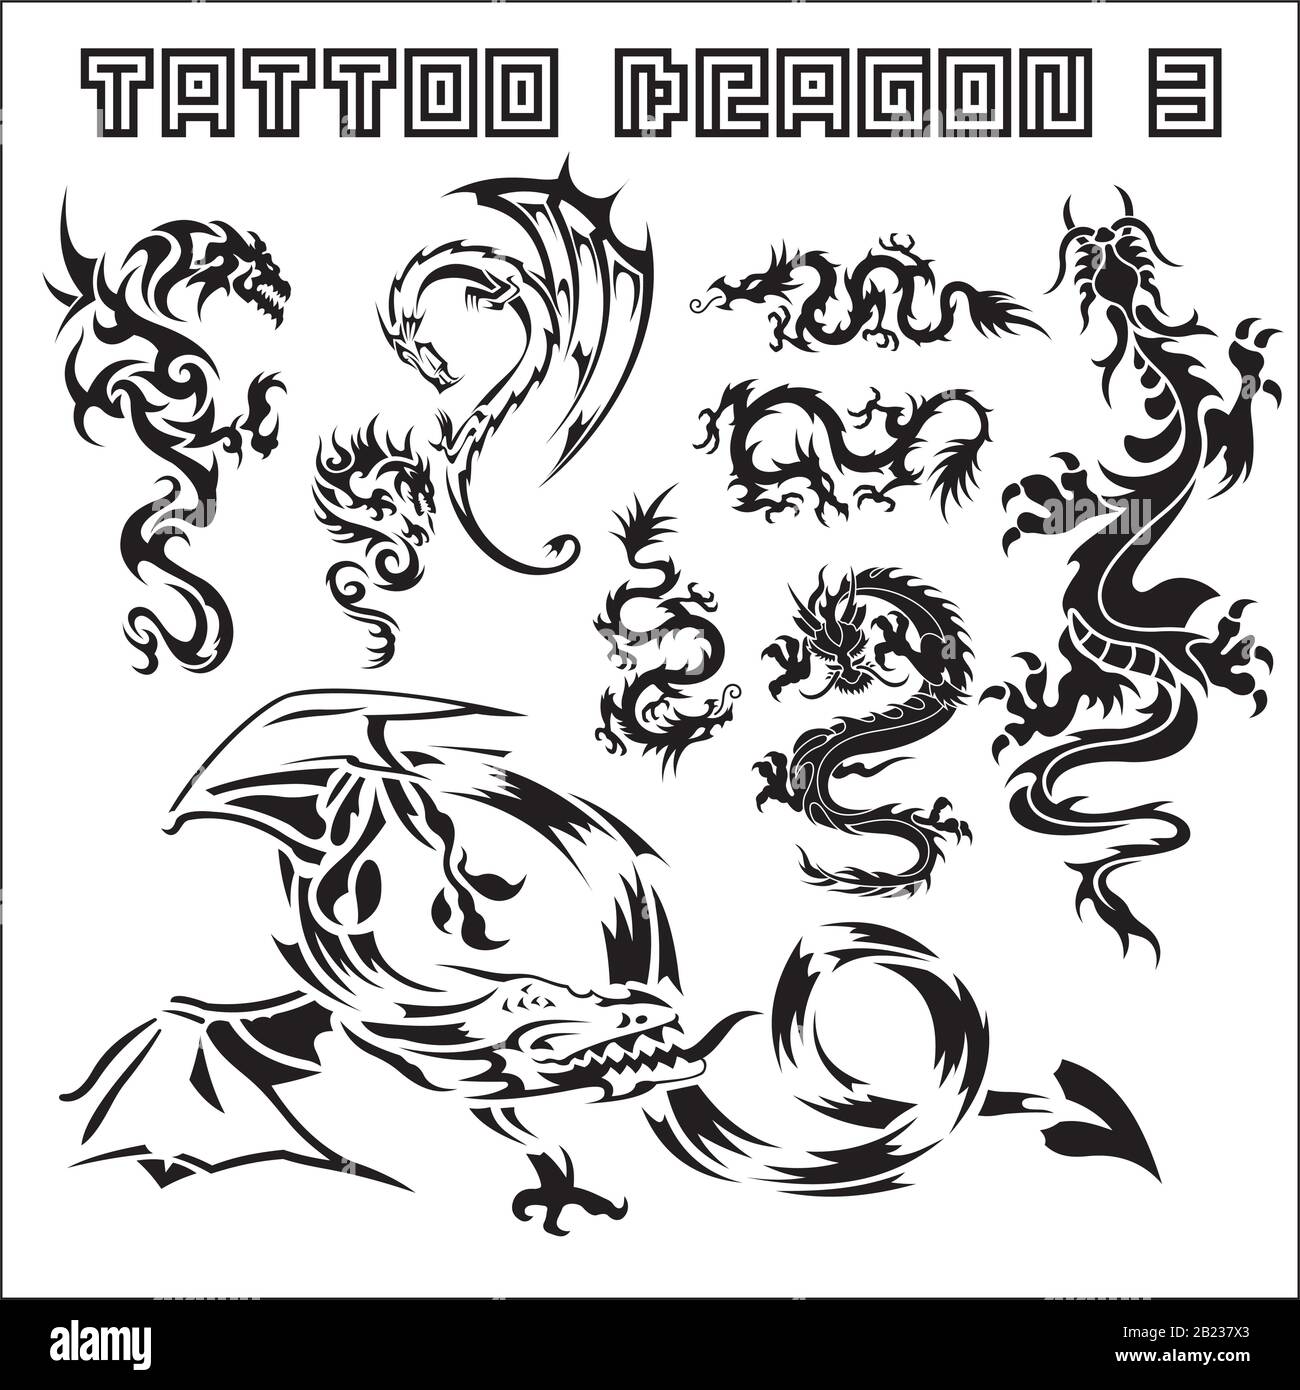 tattoo art collection illustration Stock Vector